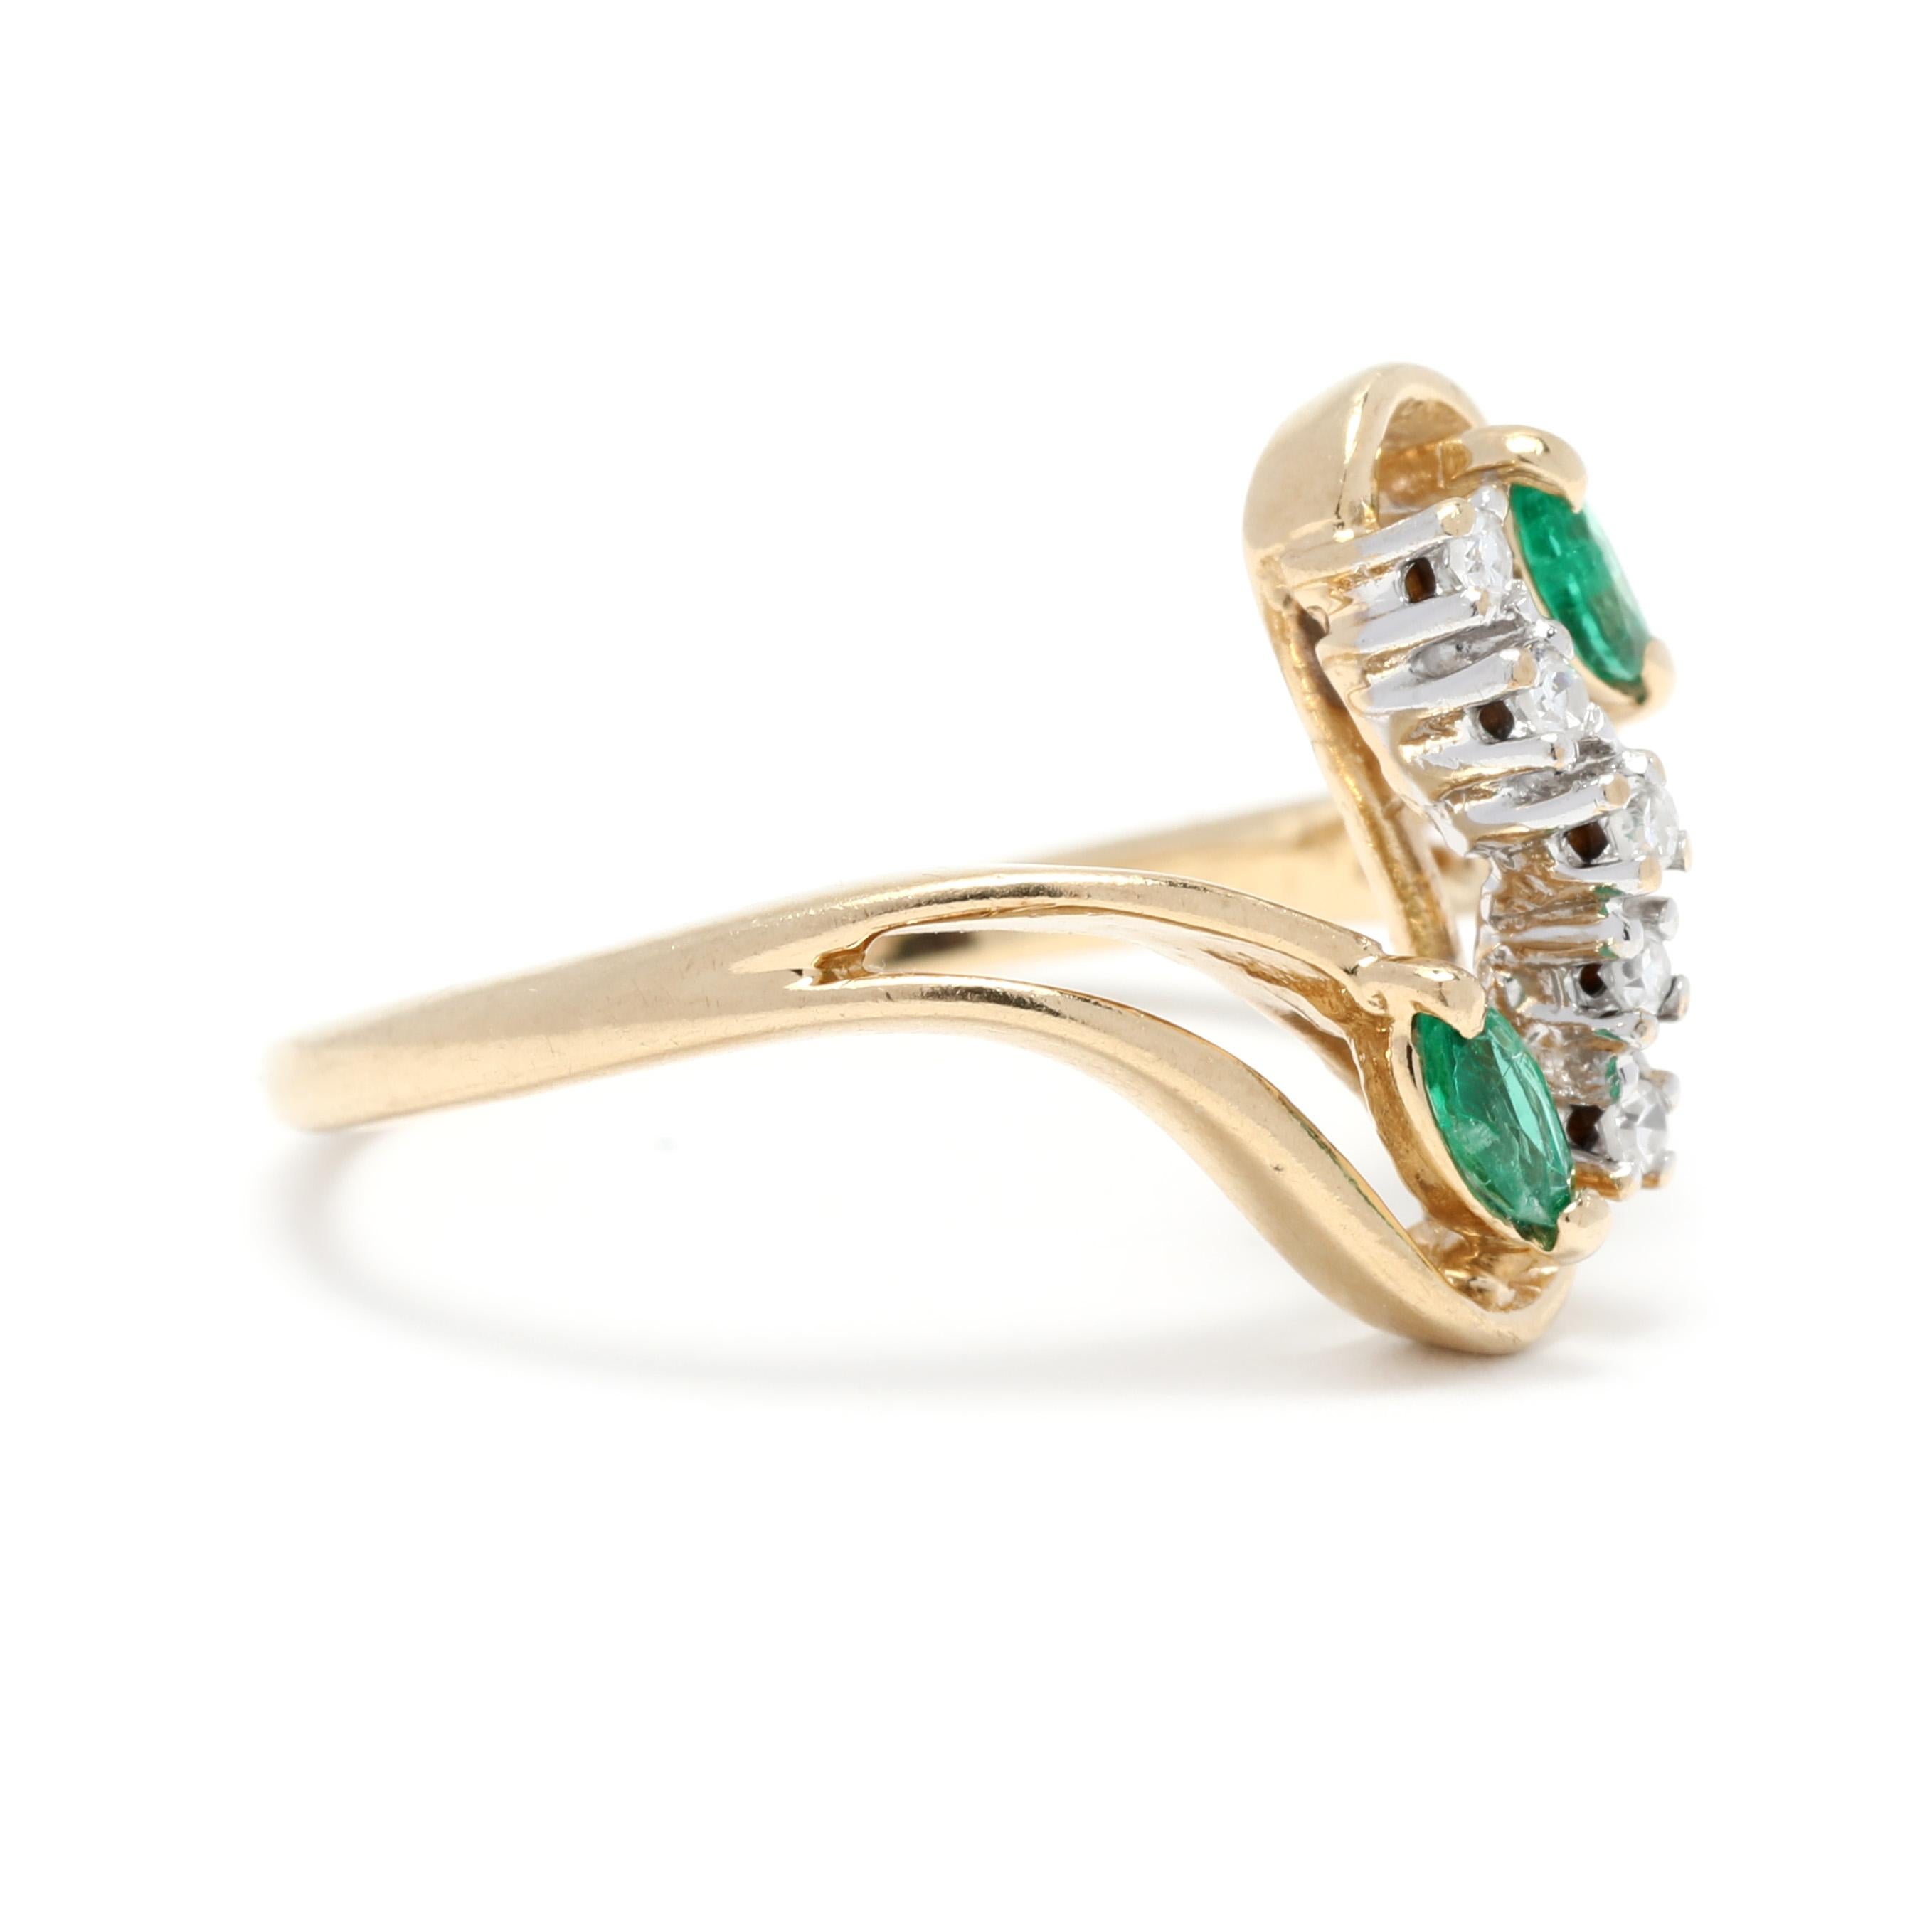 Setzen Sie mit diesem Ring aus 14 Karat Gelbgold mit 0,14 Karat natürlichem Smaragddiamanten ein stilvolles Zeichen. Das modernistische Wirbeldesign hat eine Ringgröße von 5,25 und wird mit Sicherheit Komplimente ernten. Der funkelnde Smaragddiamant